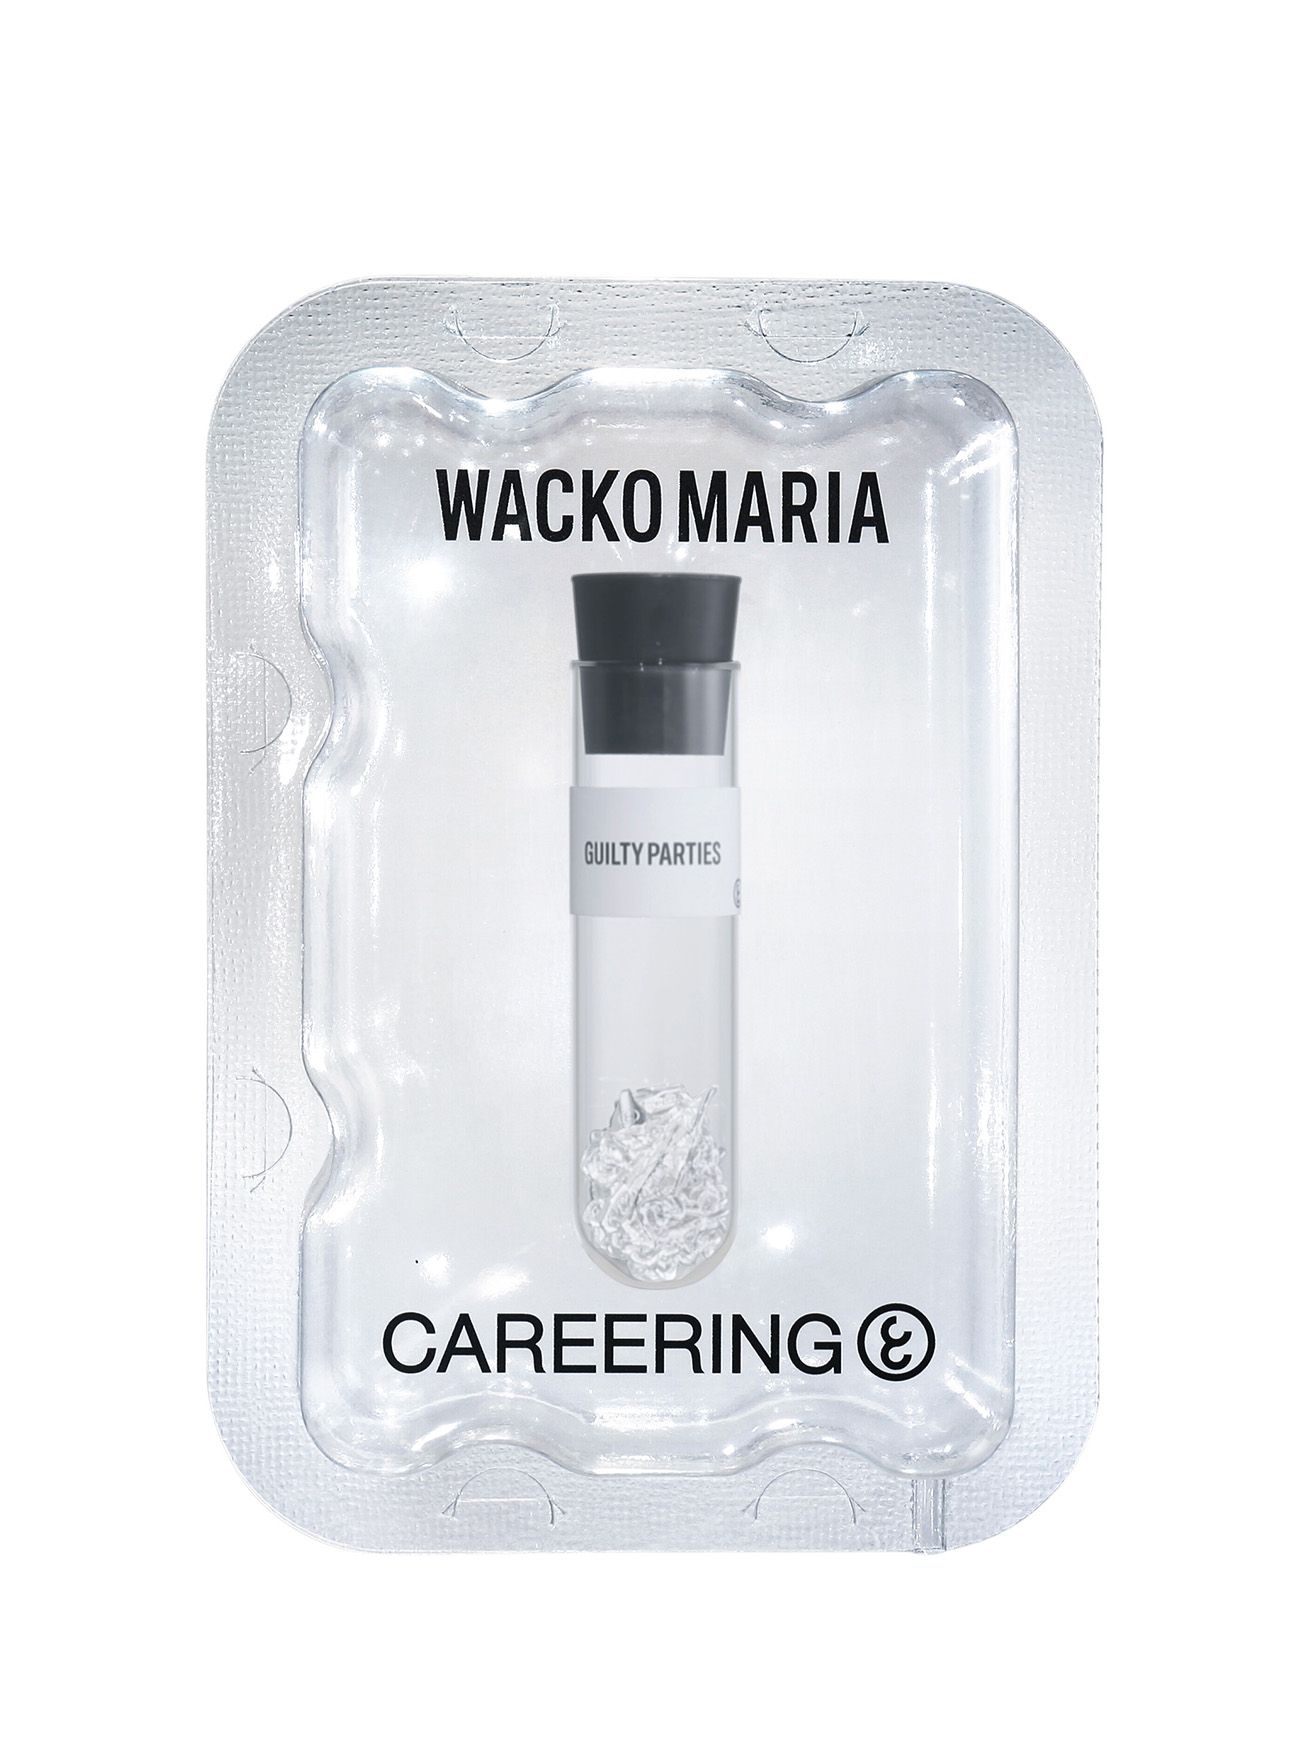 CAREERING - ワコマリア コラボ ネックレス - WACKO MARIA GUILTY